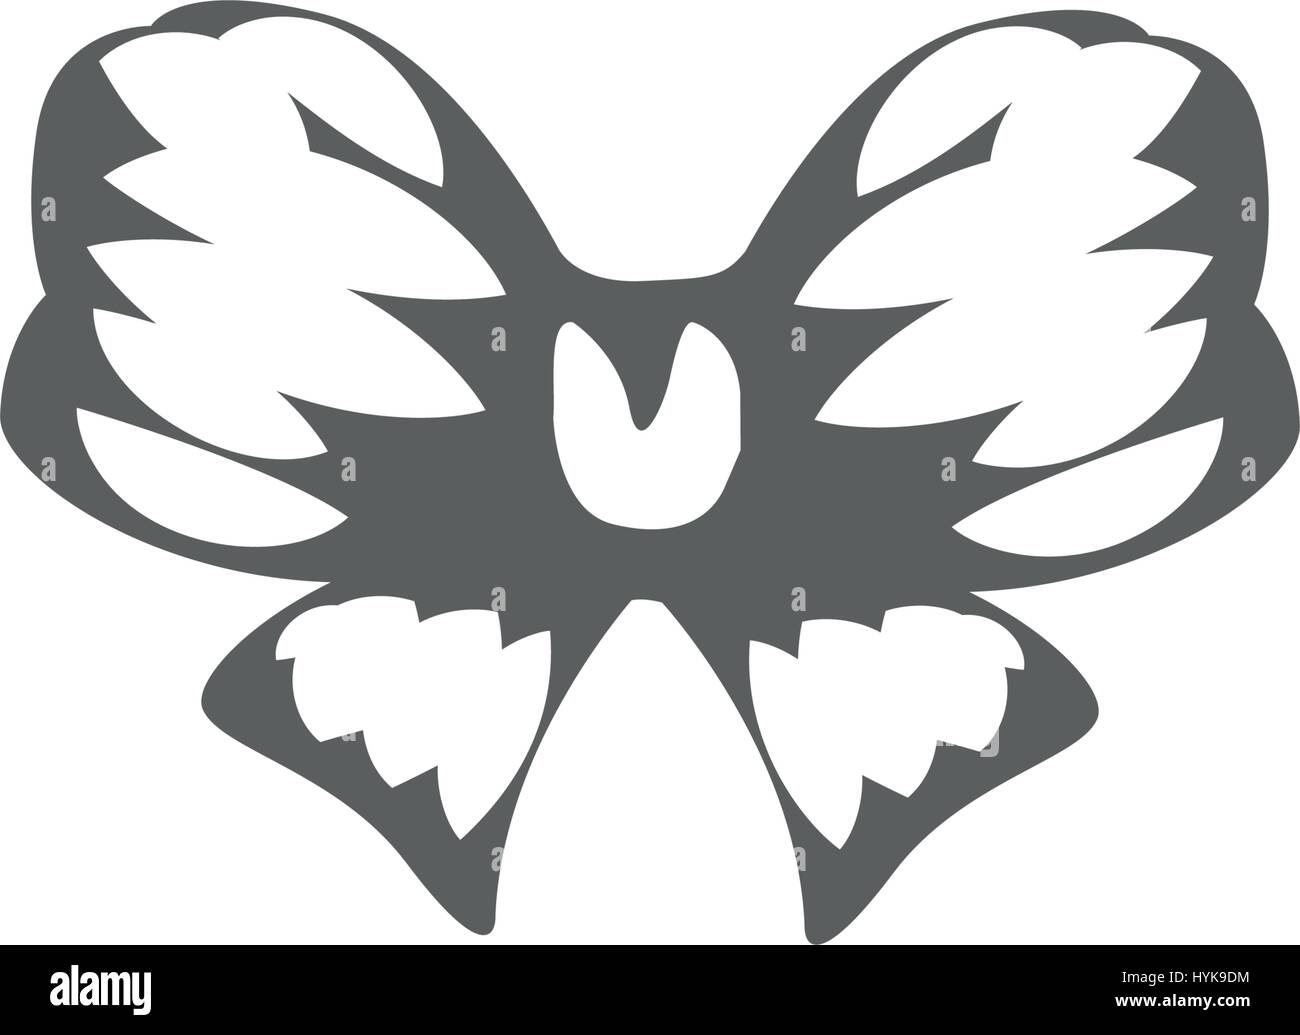 Abstract isolato in bianco e nero a colori del logo di prua, decorativo elemento festoso logotipo Illustrazione Vettoriale